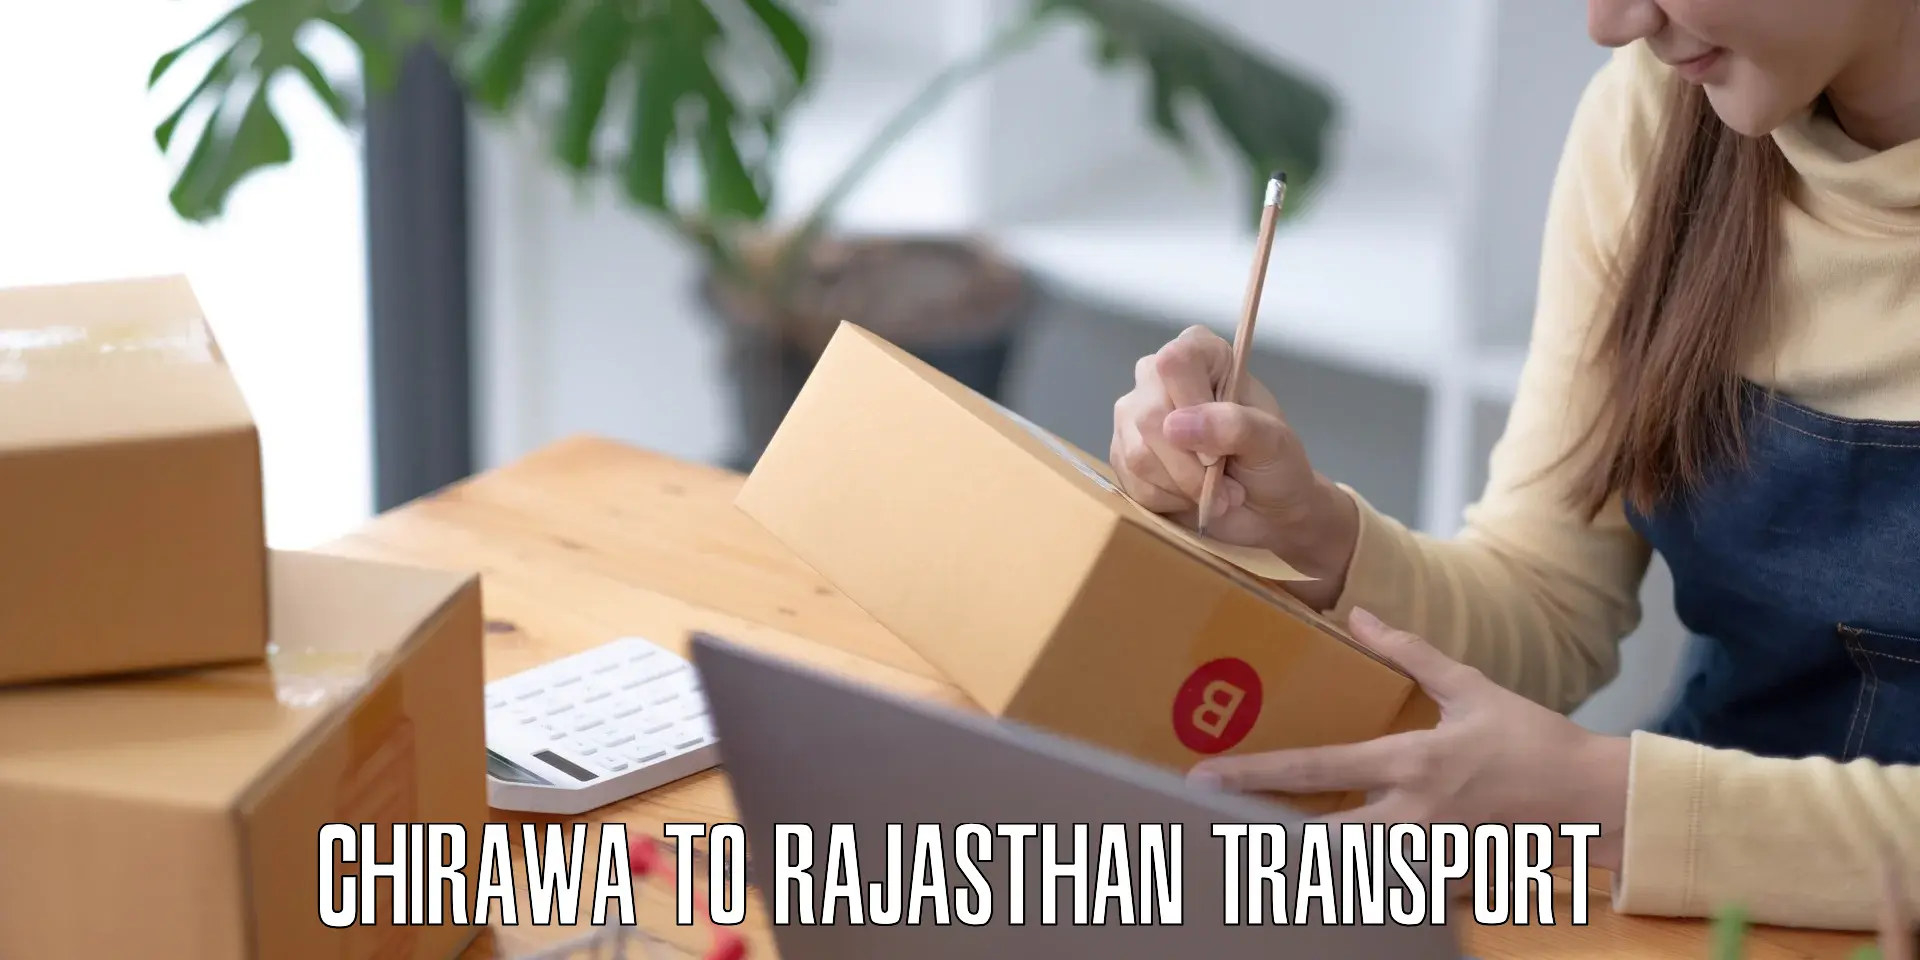 Furniture transport service Chirawa to Rajasthan